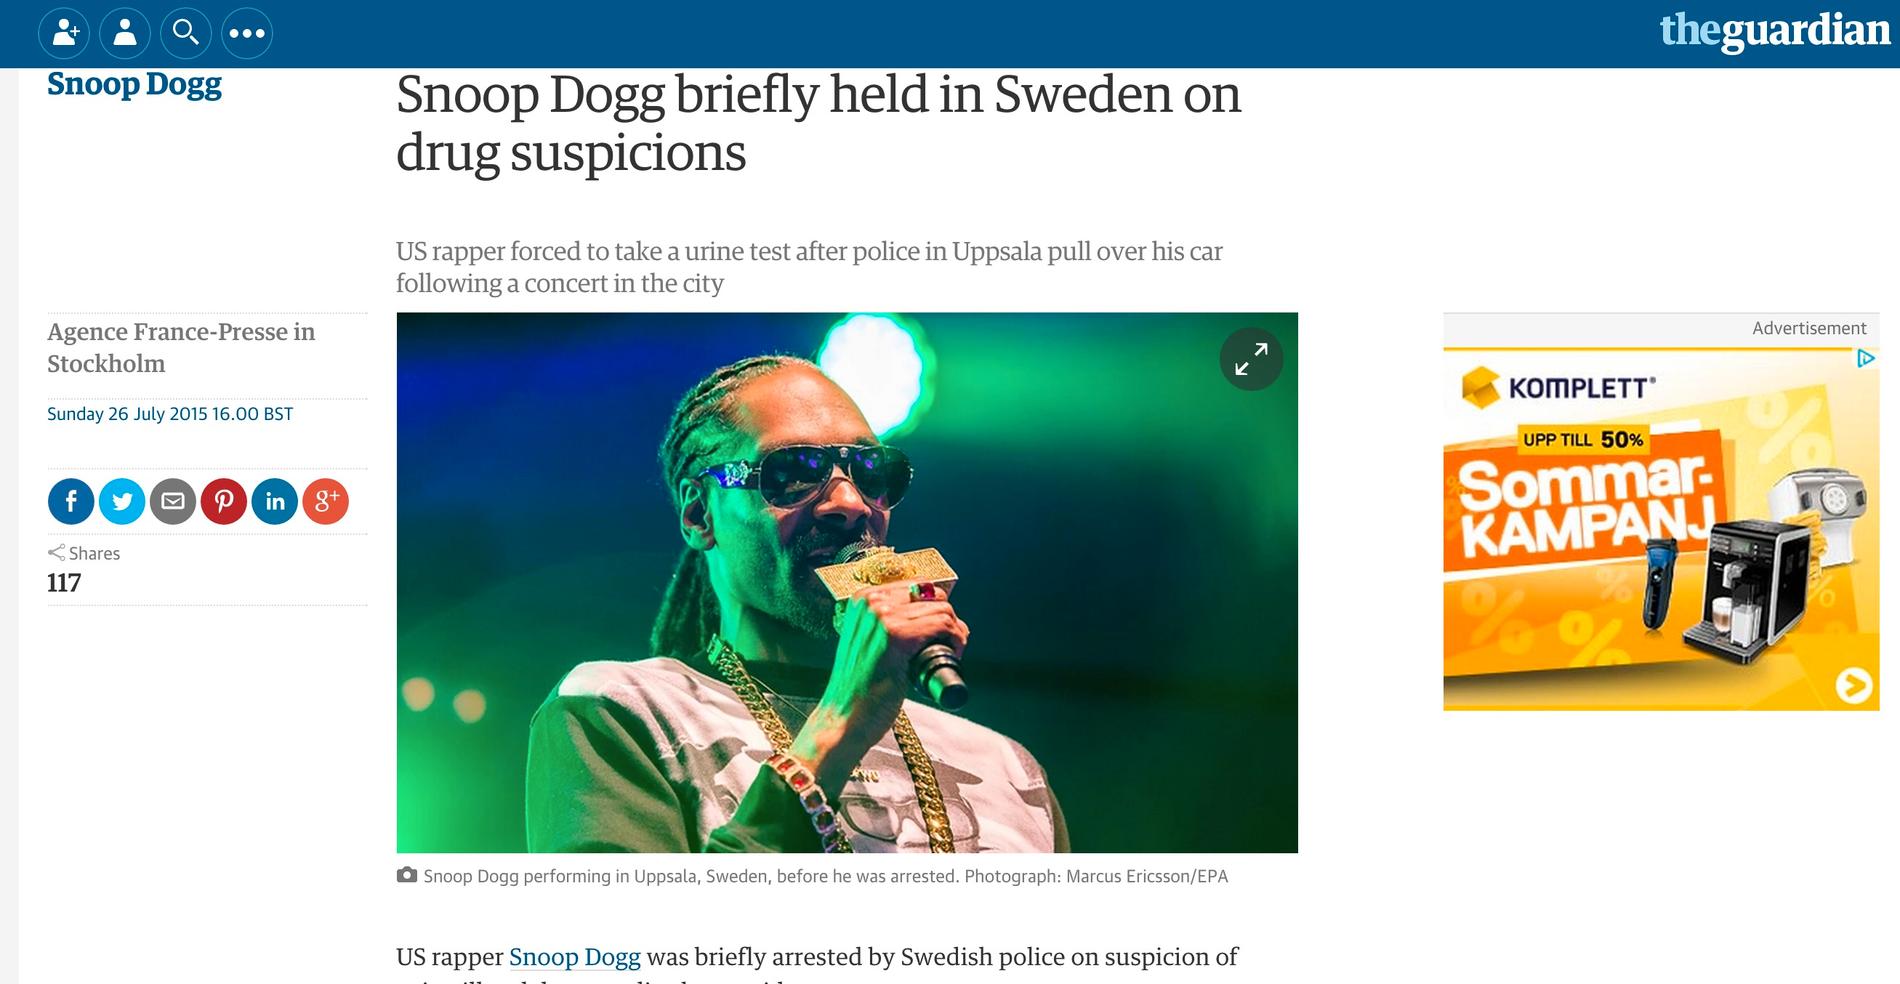 Guardian Snoop Dogg briefly held in Sweden on drug suspicions